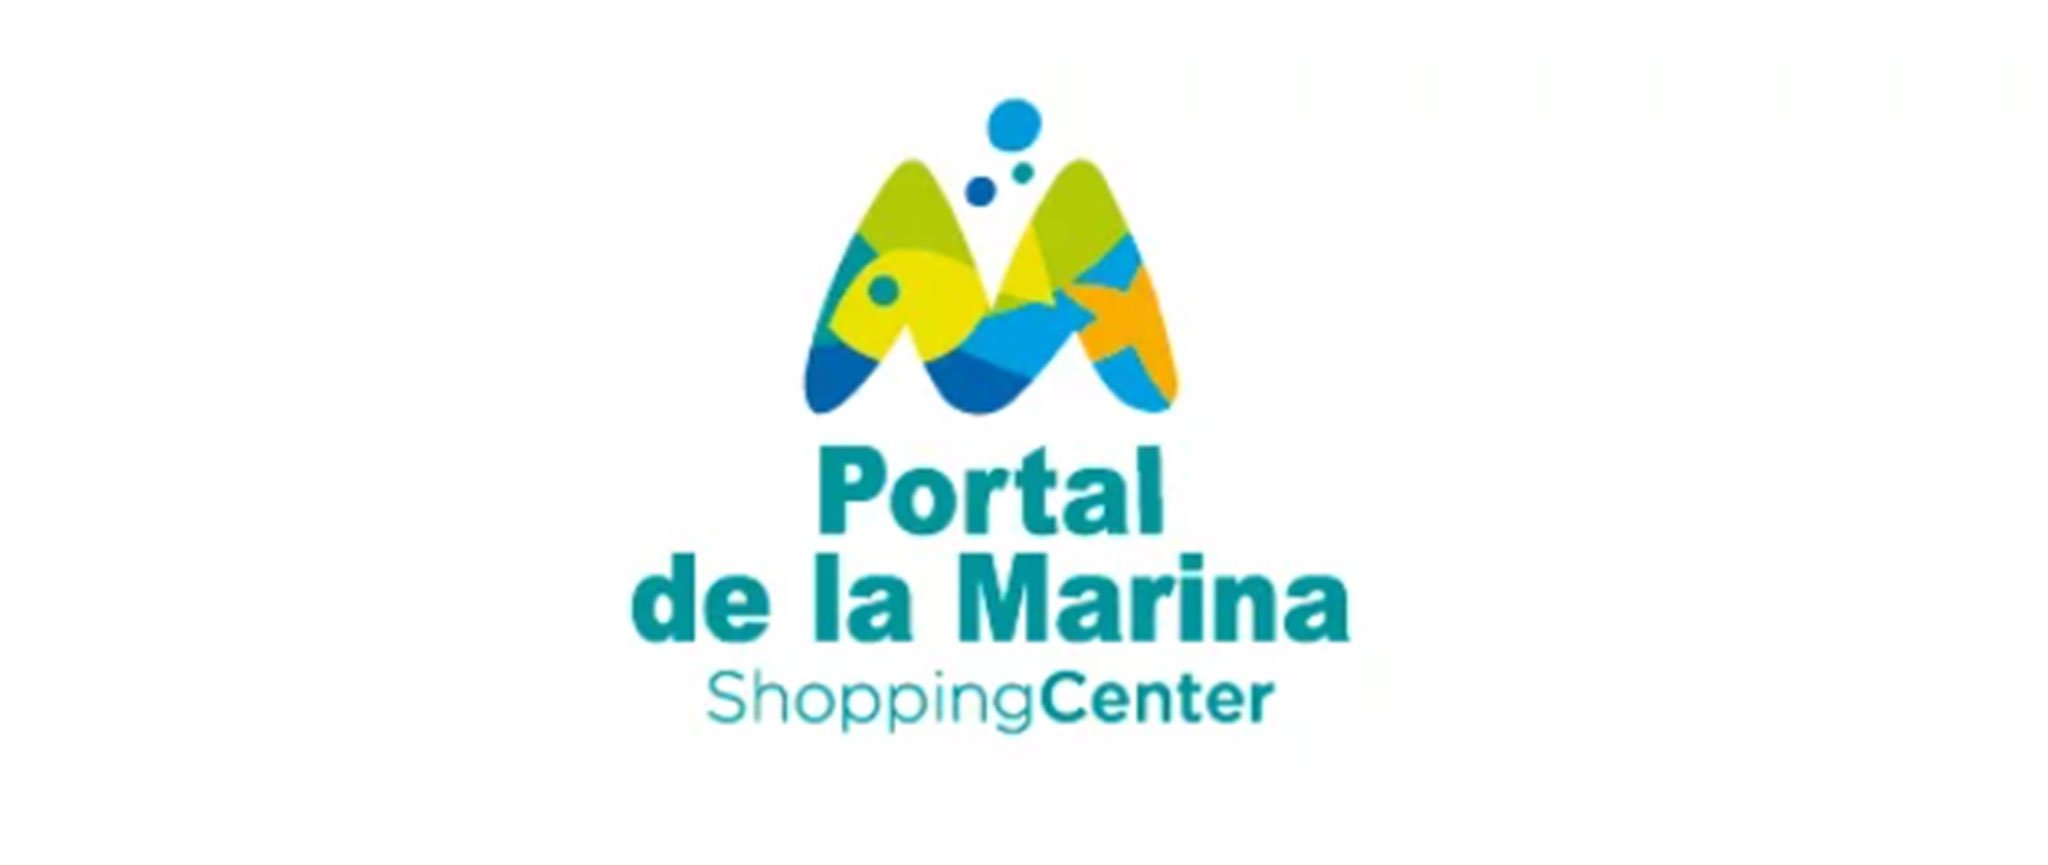 Logotipo de Portal de la Marina